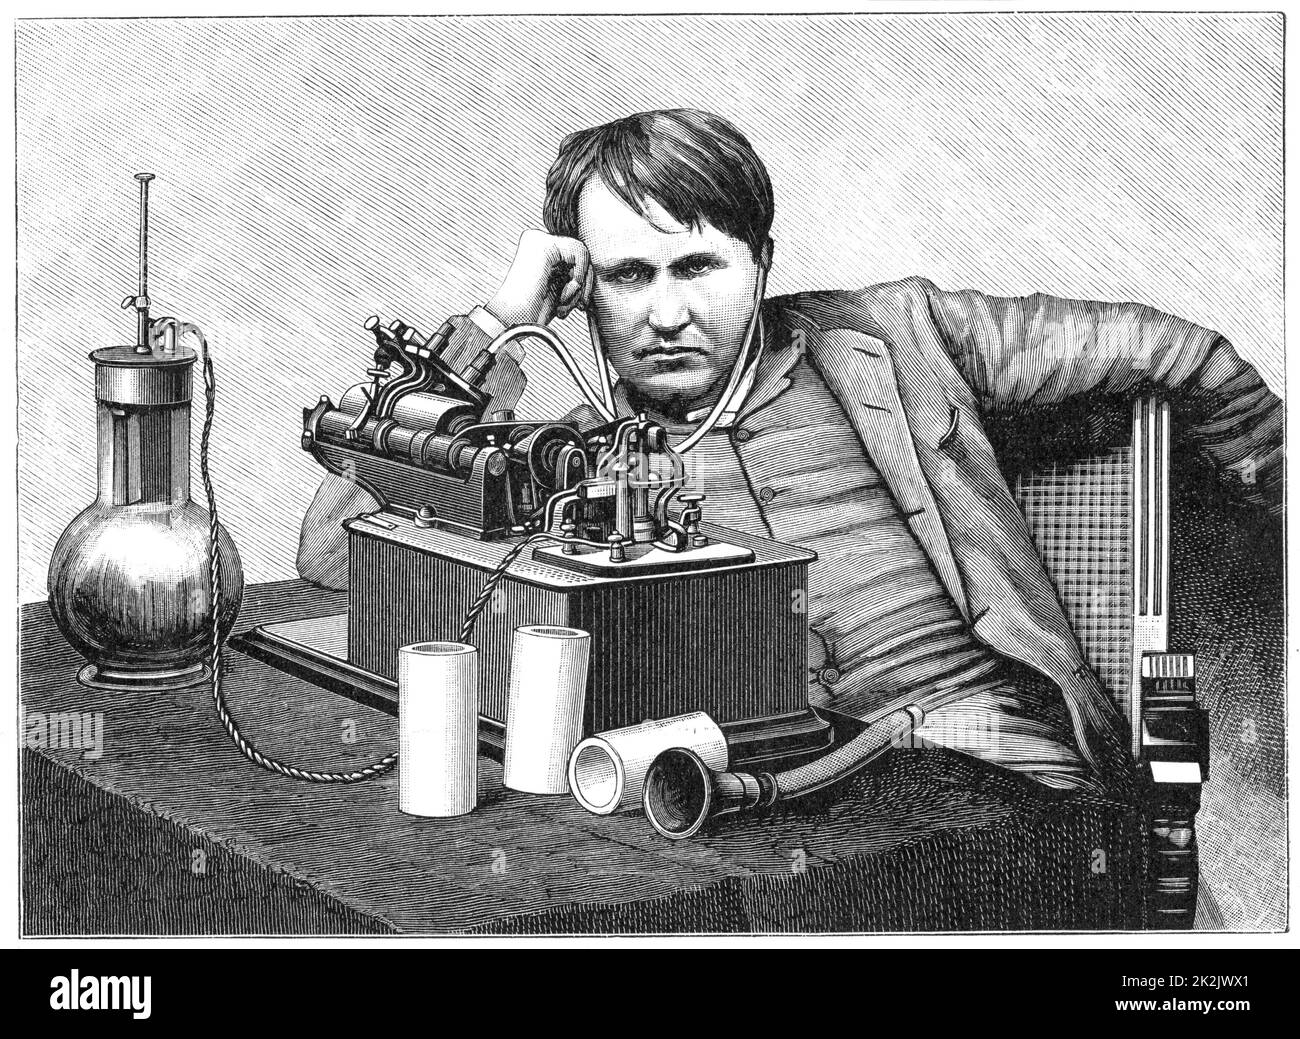 Thomas Alva Edison (1847-1931) inventore americano, ascoltando una registrazione sul suo fonografo. Si tratta di un modello elettrico alimentato da una cella bicromata (a sinistra), una forma di batteria umida. Incisione c1895 Foto Stock